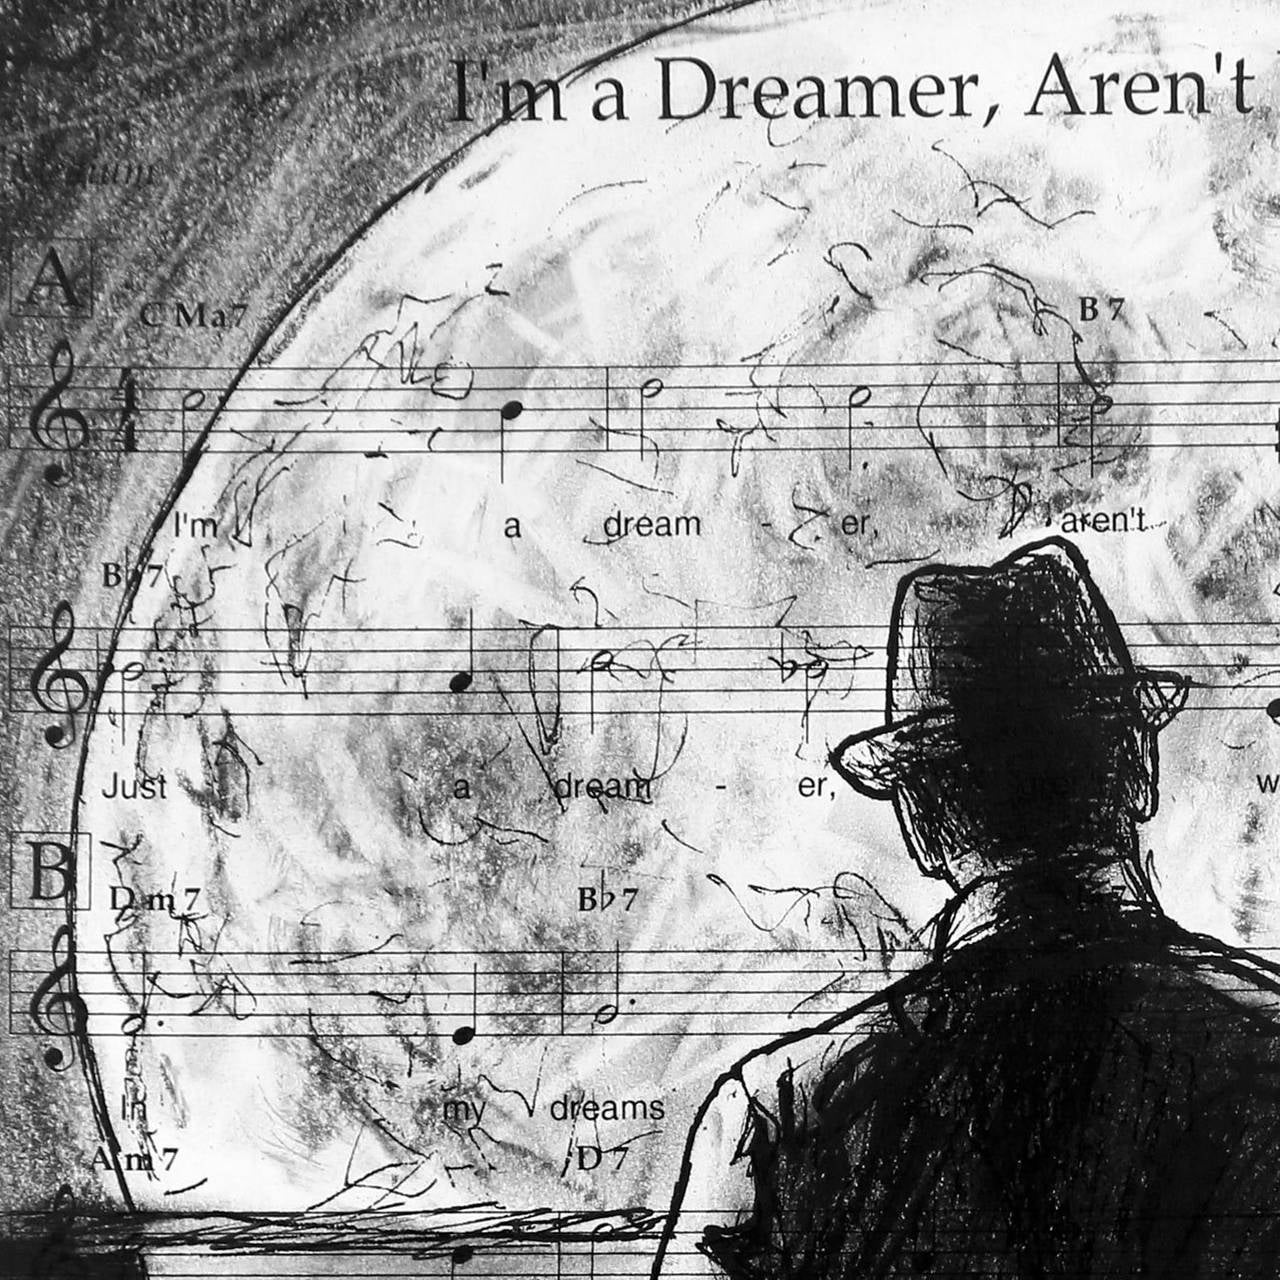 Just a Dreamer - Art by Robert Lebsack